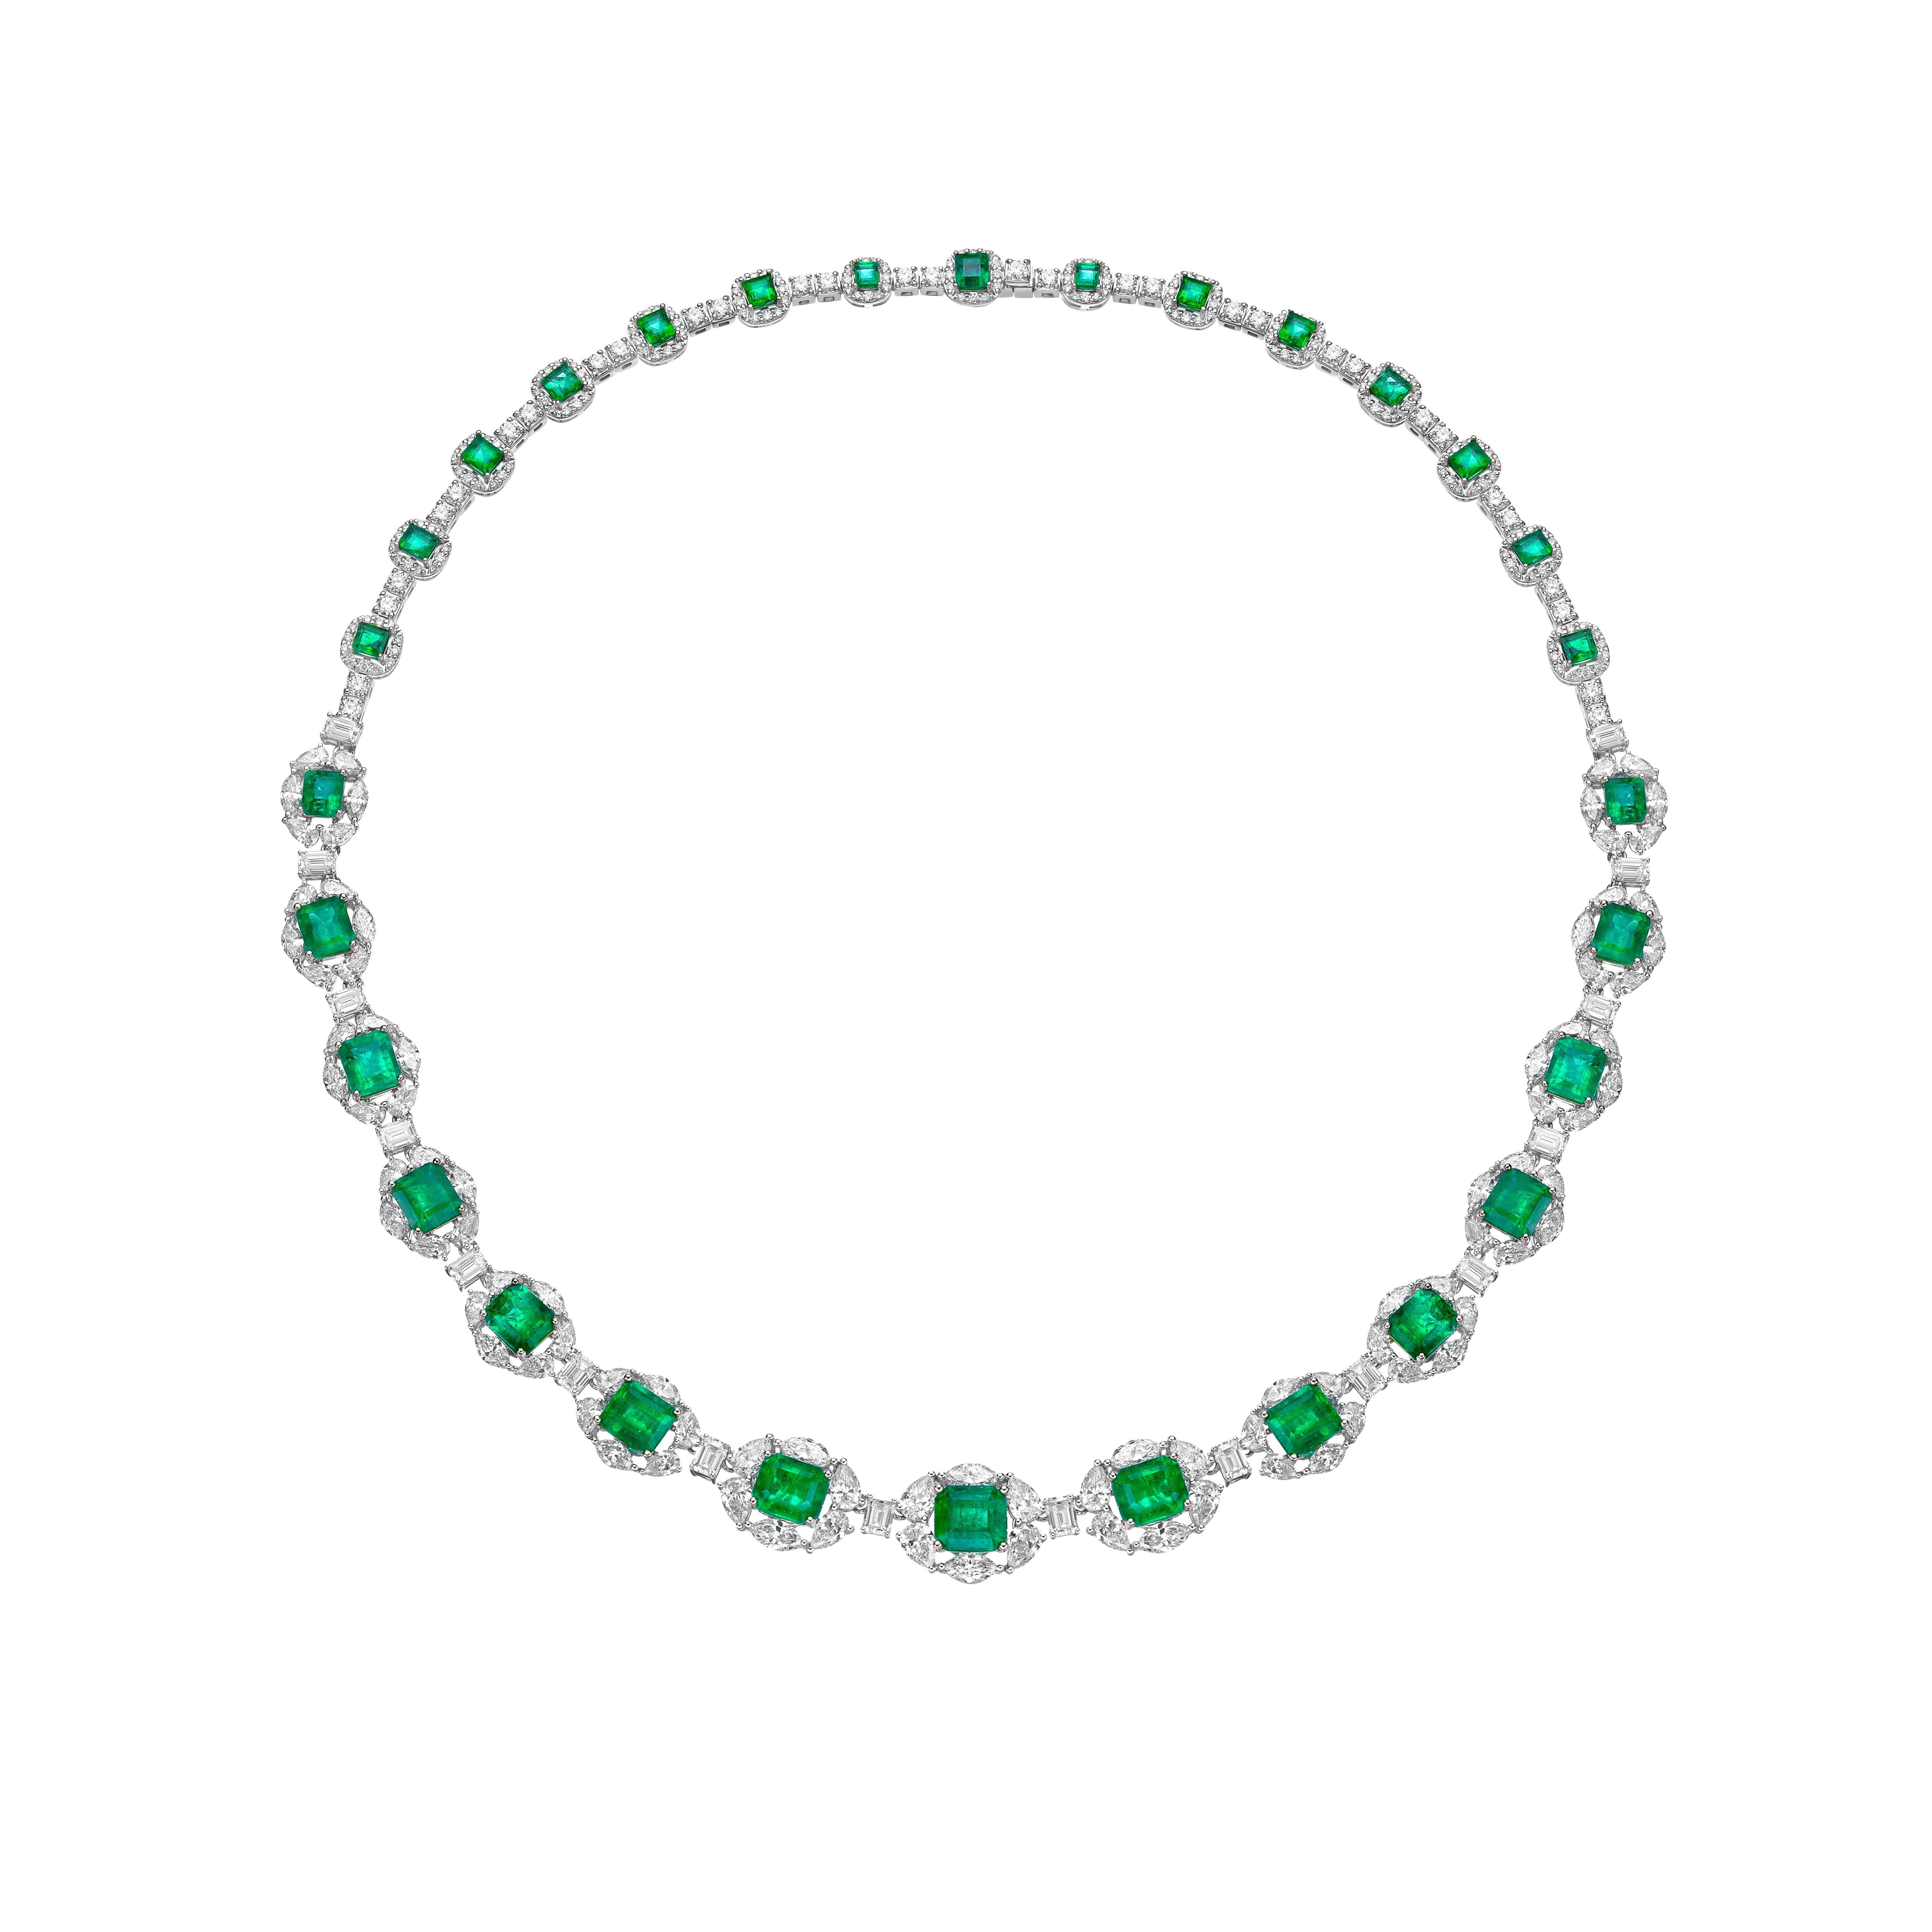 Émeraudes radiales par Sunita Nahata Fine Design. Cette collection présente des émeraudes d'un vert éclatant serties sur un lit de diamants blancs éblouissants en or blanc. Il s'agit d'un collier de mariage délicat et délicat, mais qui dégage un